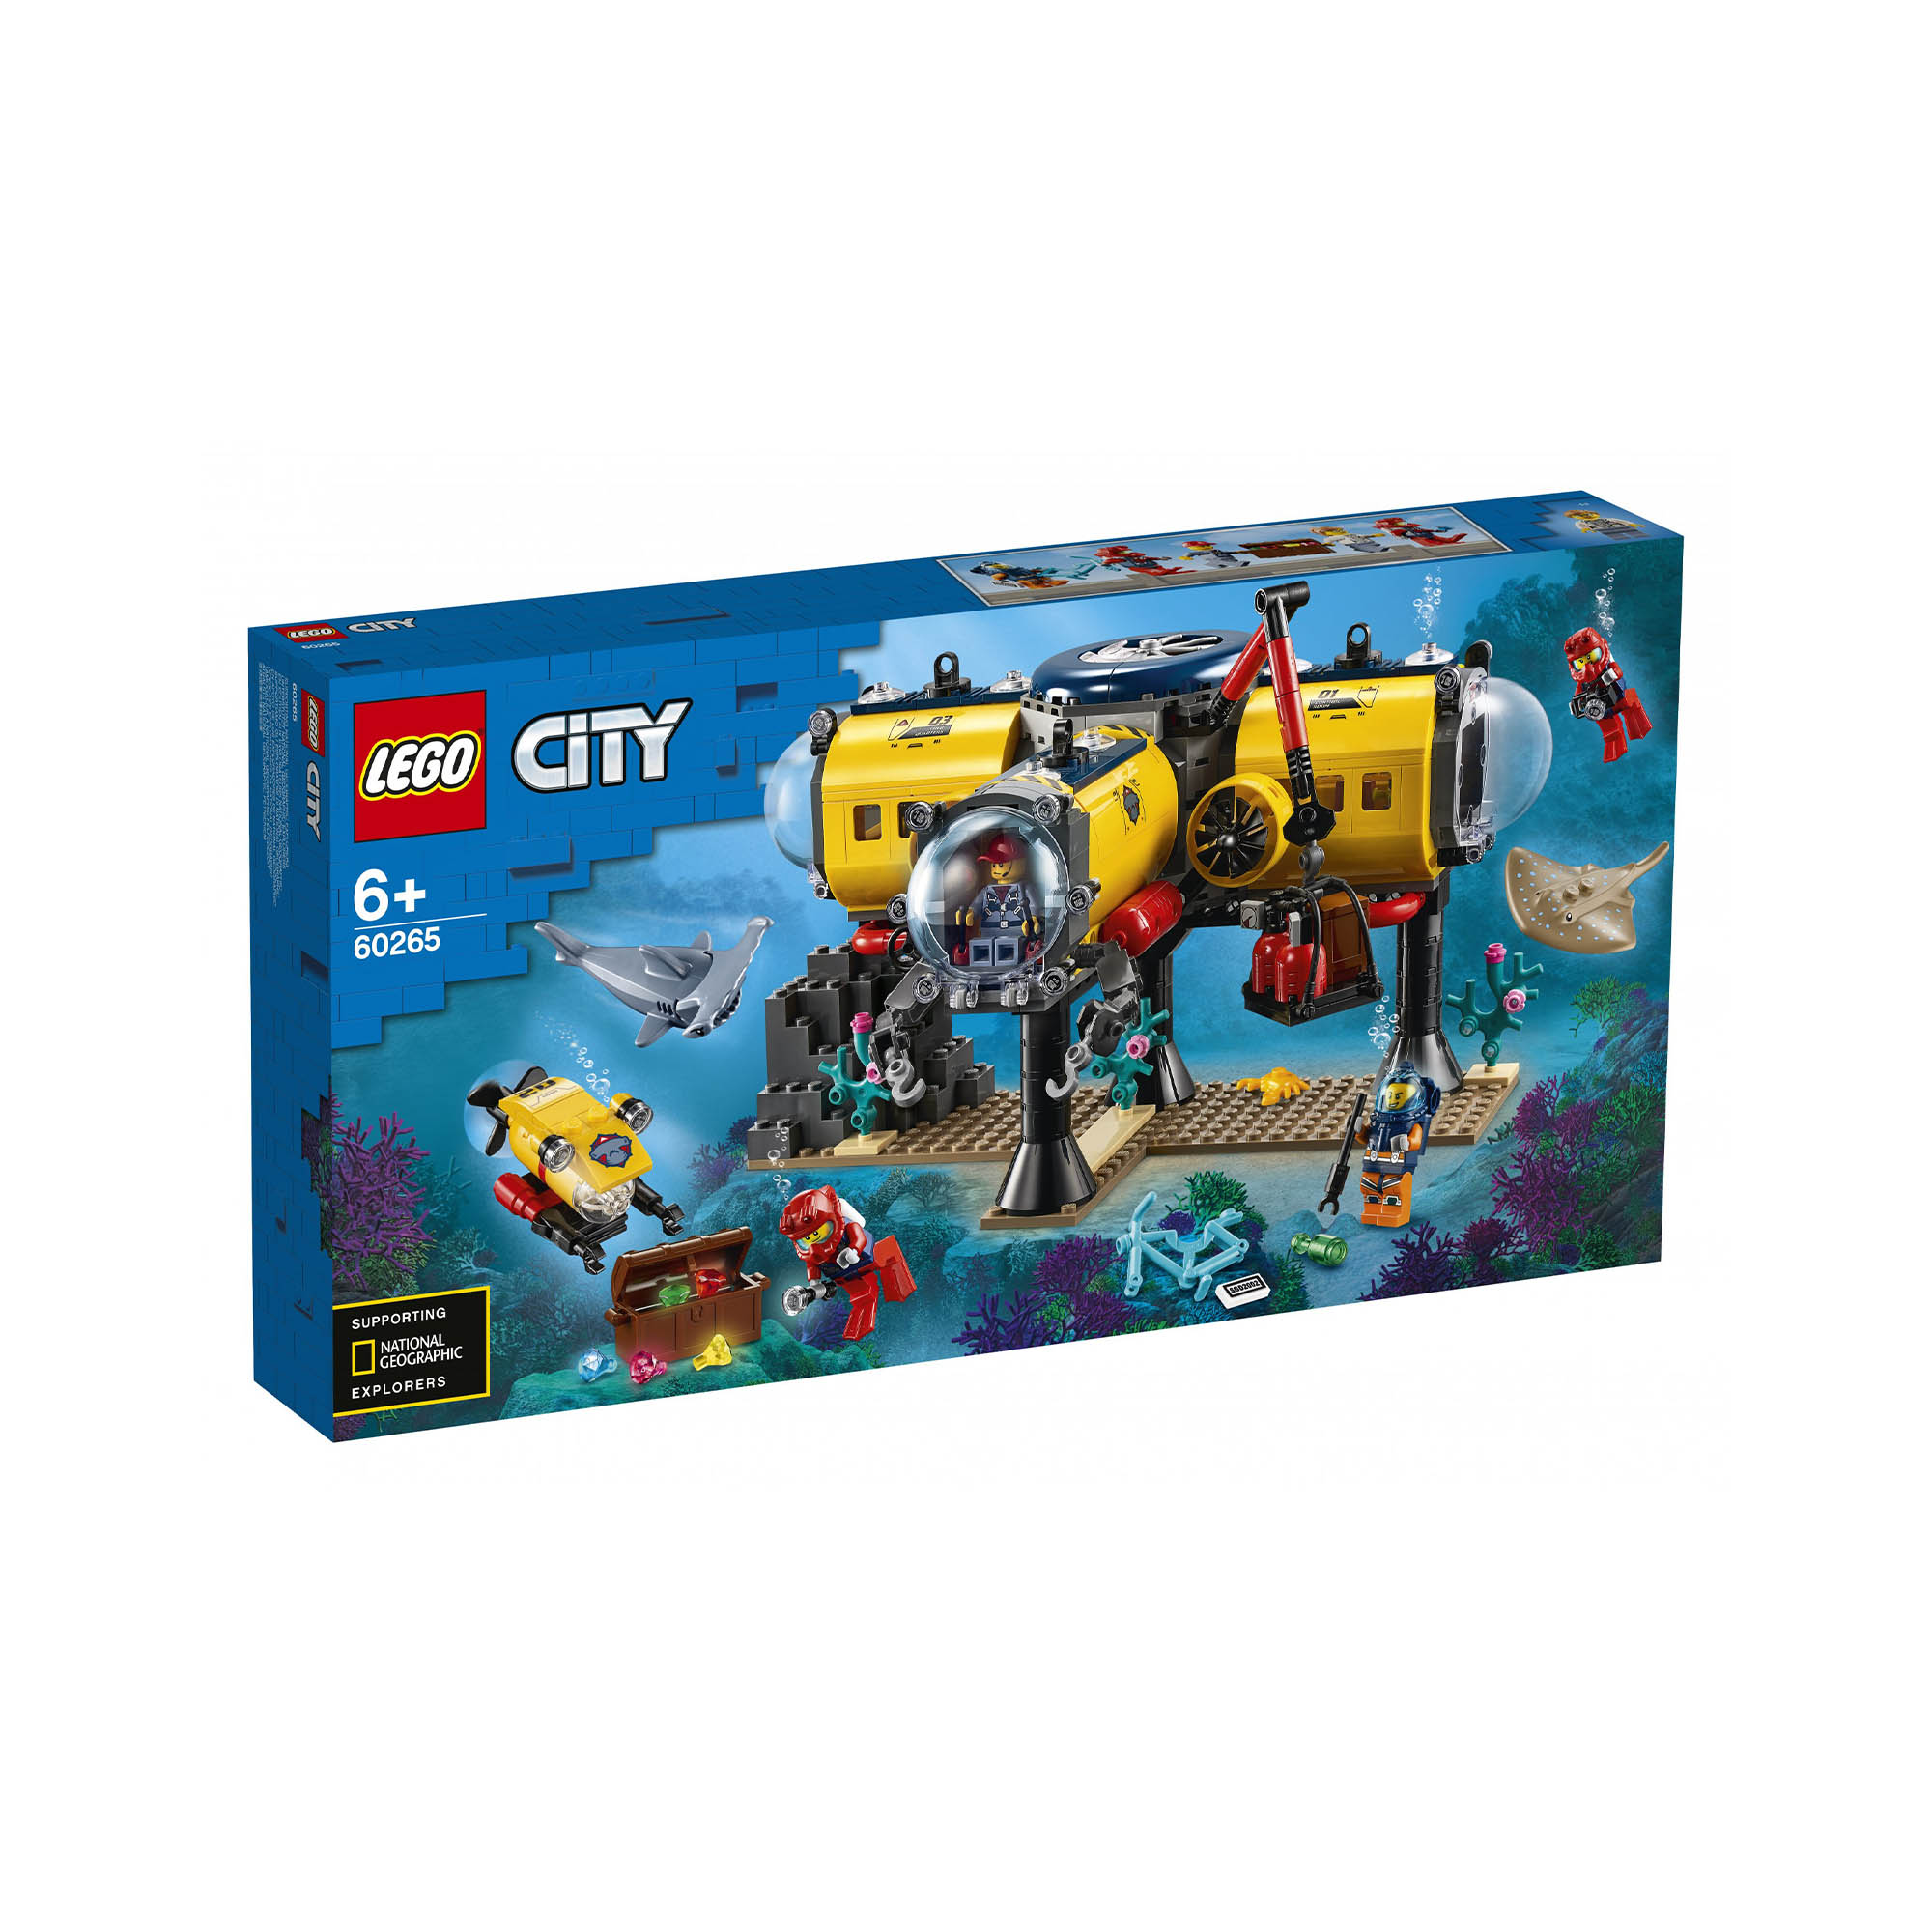 LEGO City Oceans Base per Esplorazioni Oceaniche, con Sottomarino Giocattolo, Dr 60265, , large